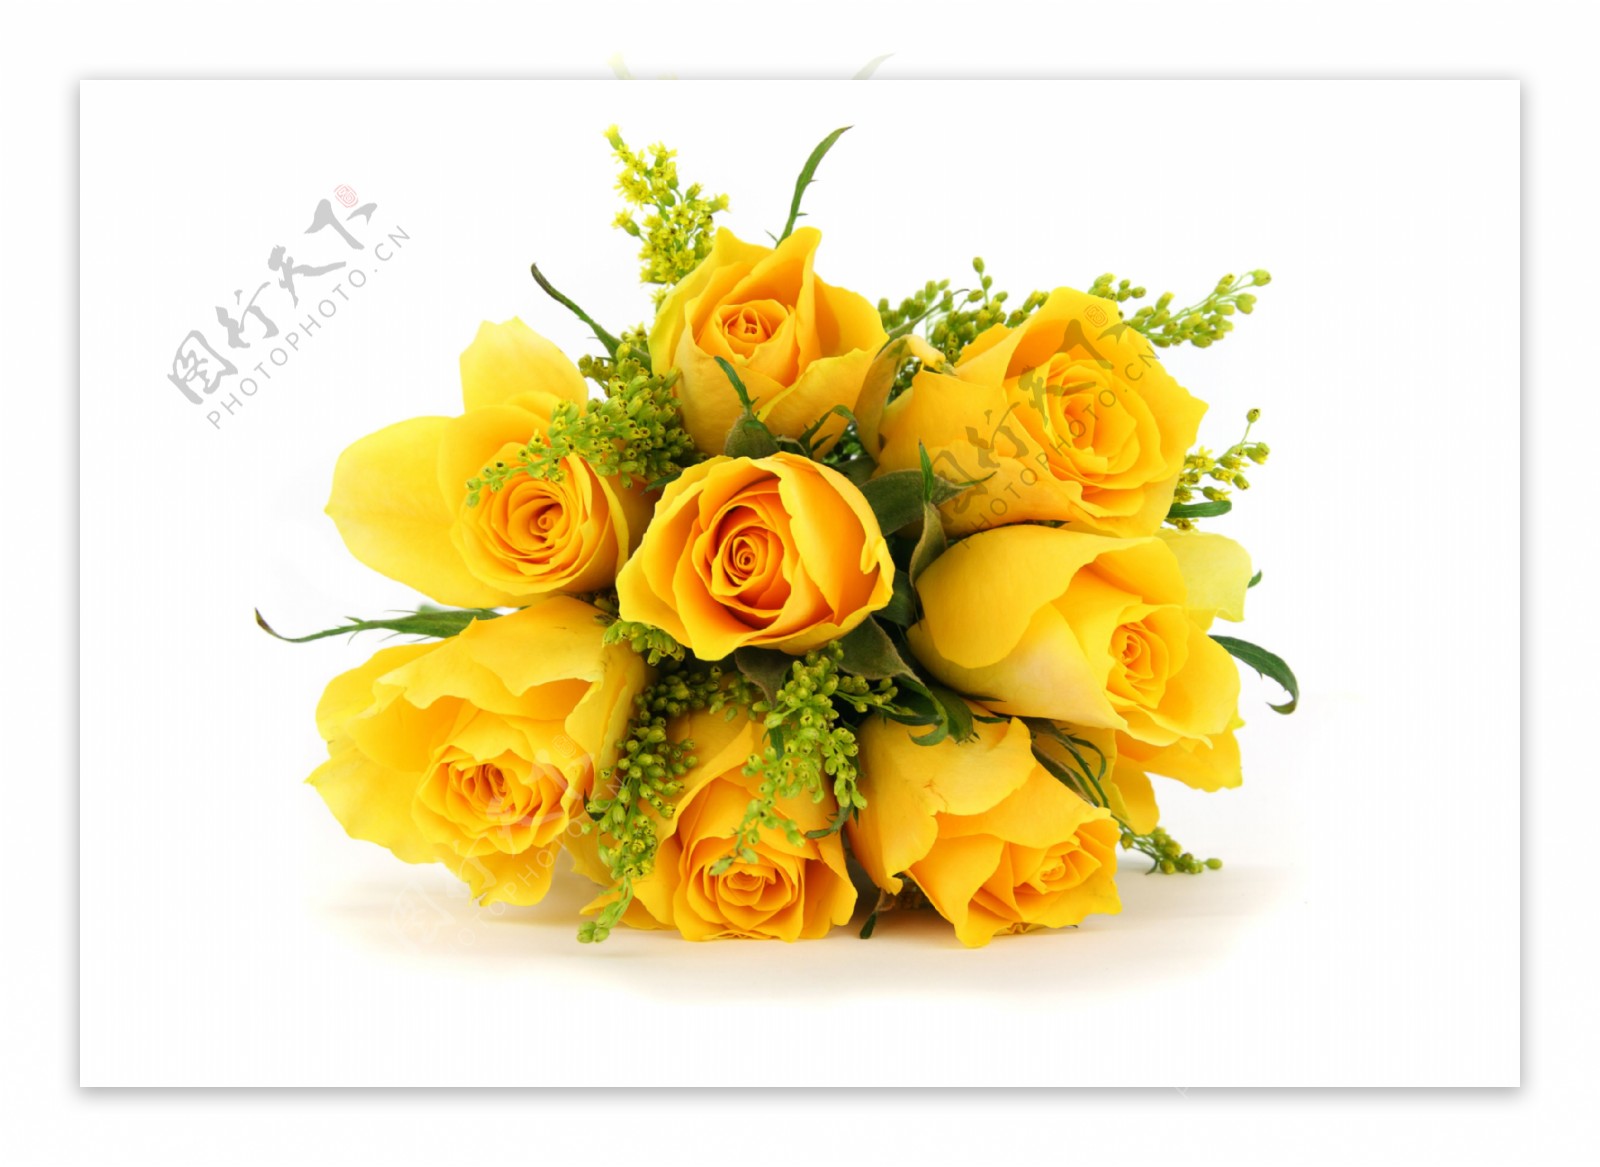 唯美黄色玫瑰花束图片